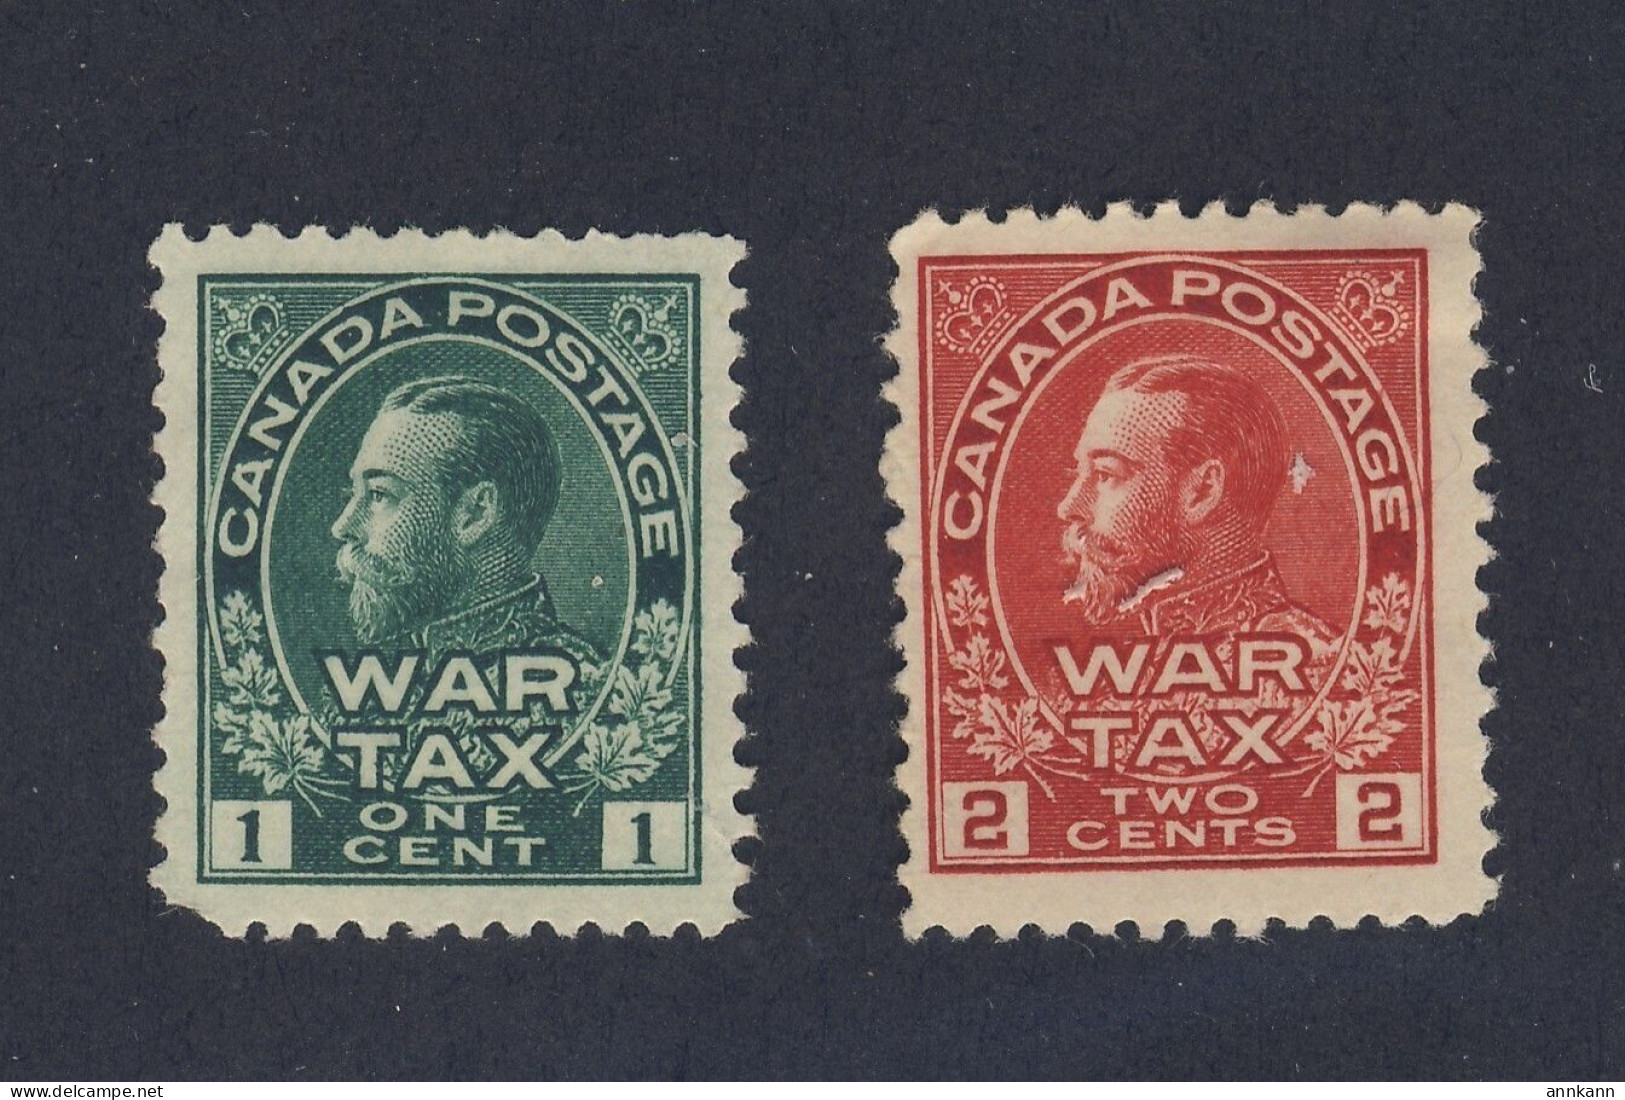 Canada KING GEORGE V - ADMIRAL Mint War Tax Stamps #MR1-1c F/VF MR2-2c Fine - War Tax